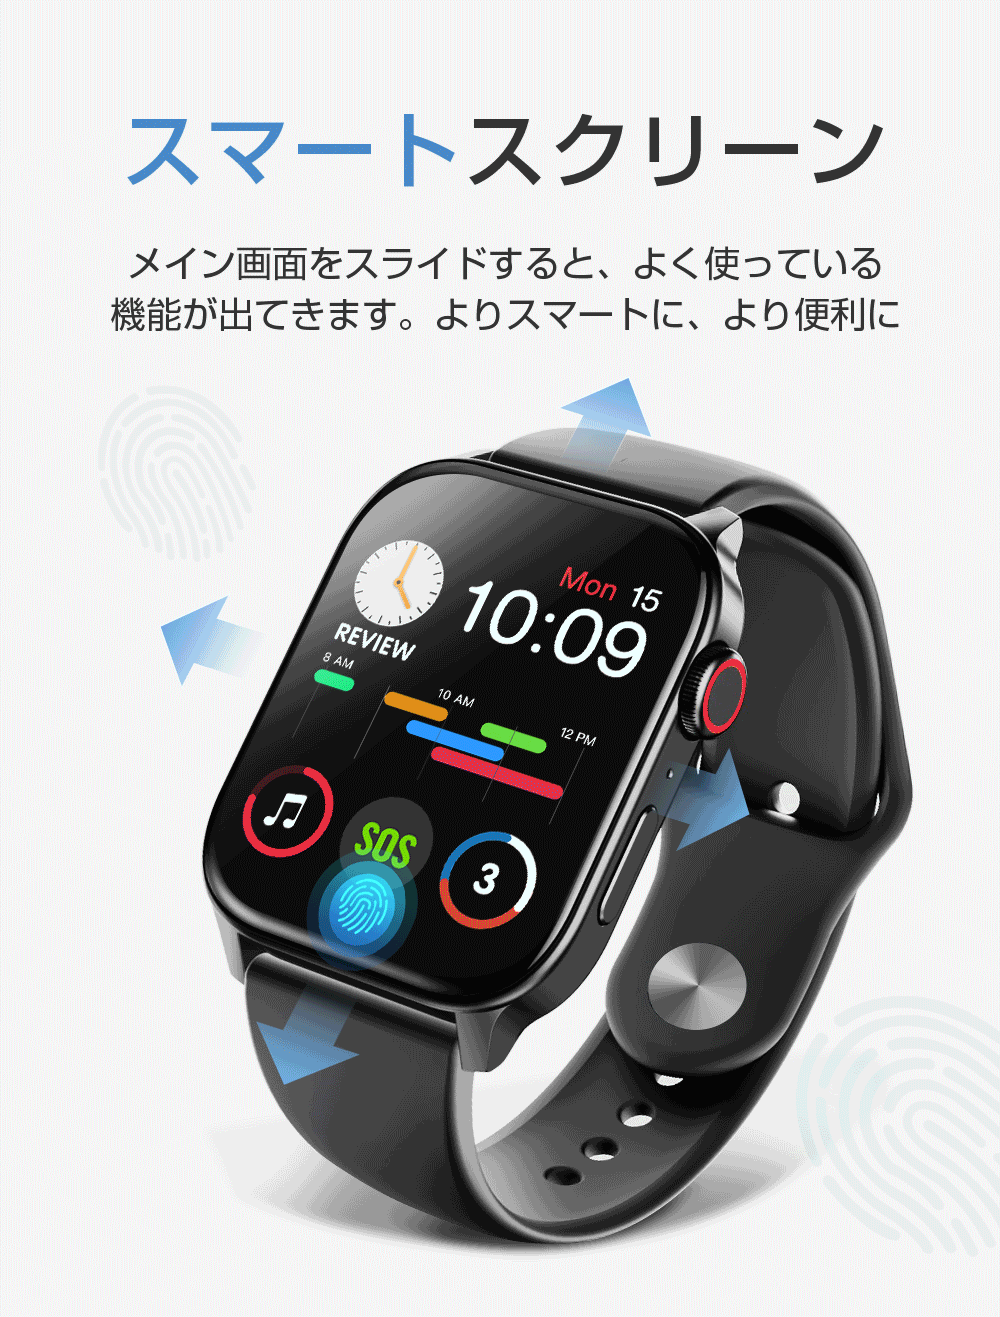 最新版 2色ベルト付きitDEAL メンズ腕時計 スマートウォッチ 通話機能付き 音楽再生 1.7インチ 24時間体温管理 血中酸素度 録音機能腕時計  Bluetooth通話 :SYN10YXYx1:TUTUYO - 通販 - Yahoo!ショッピング